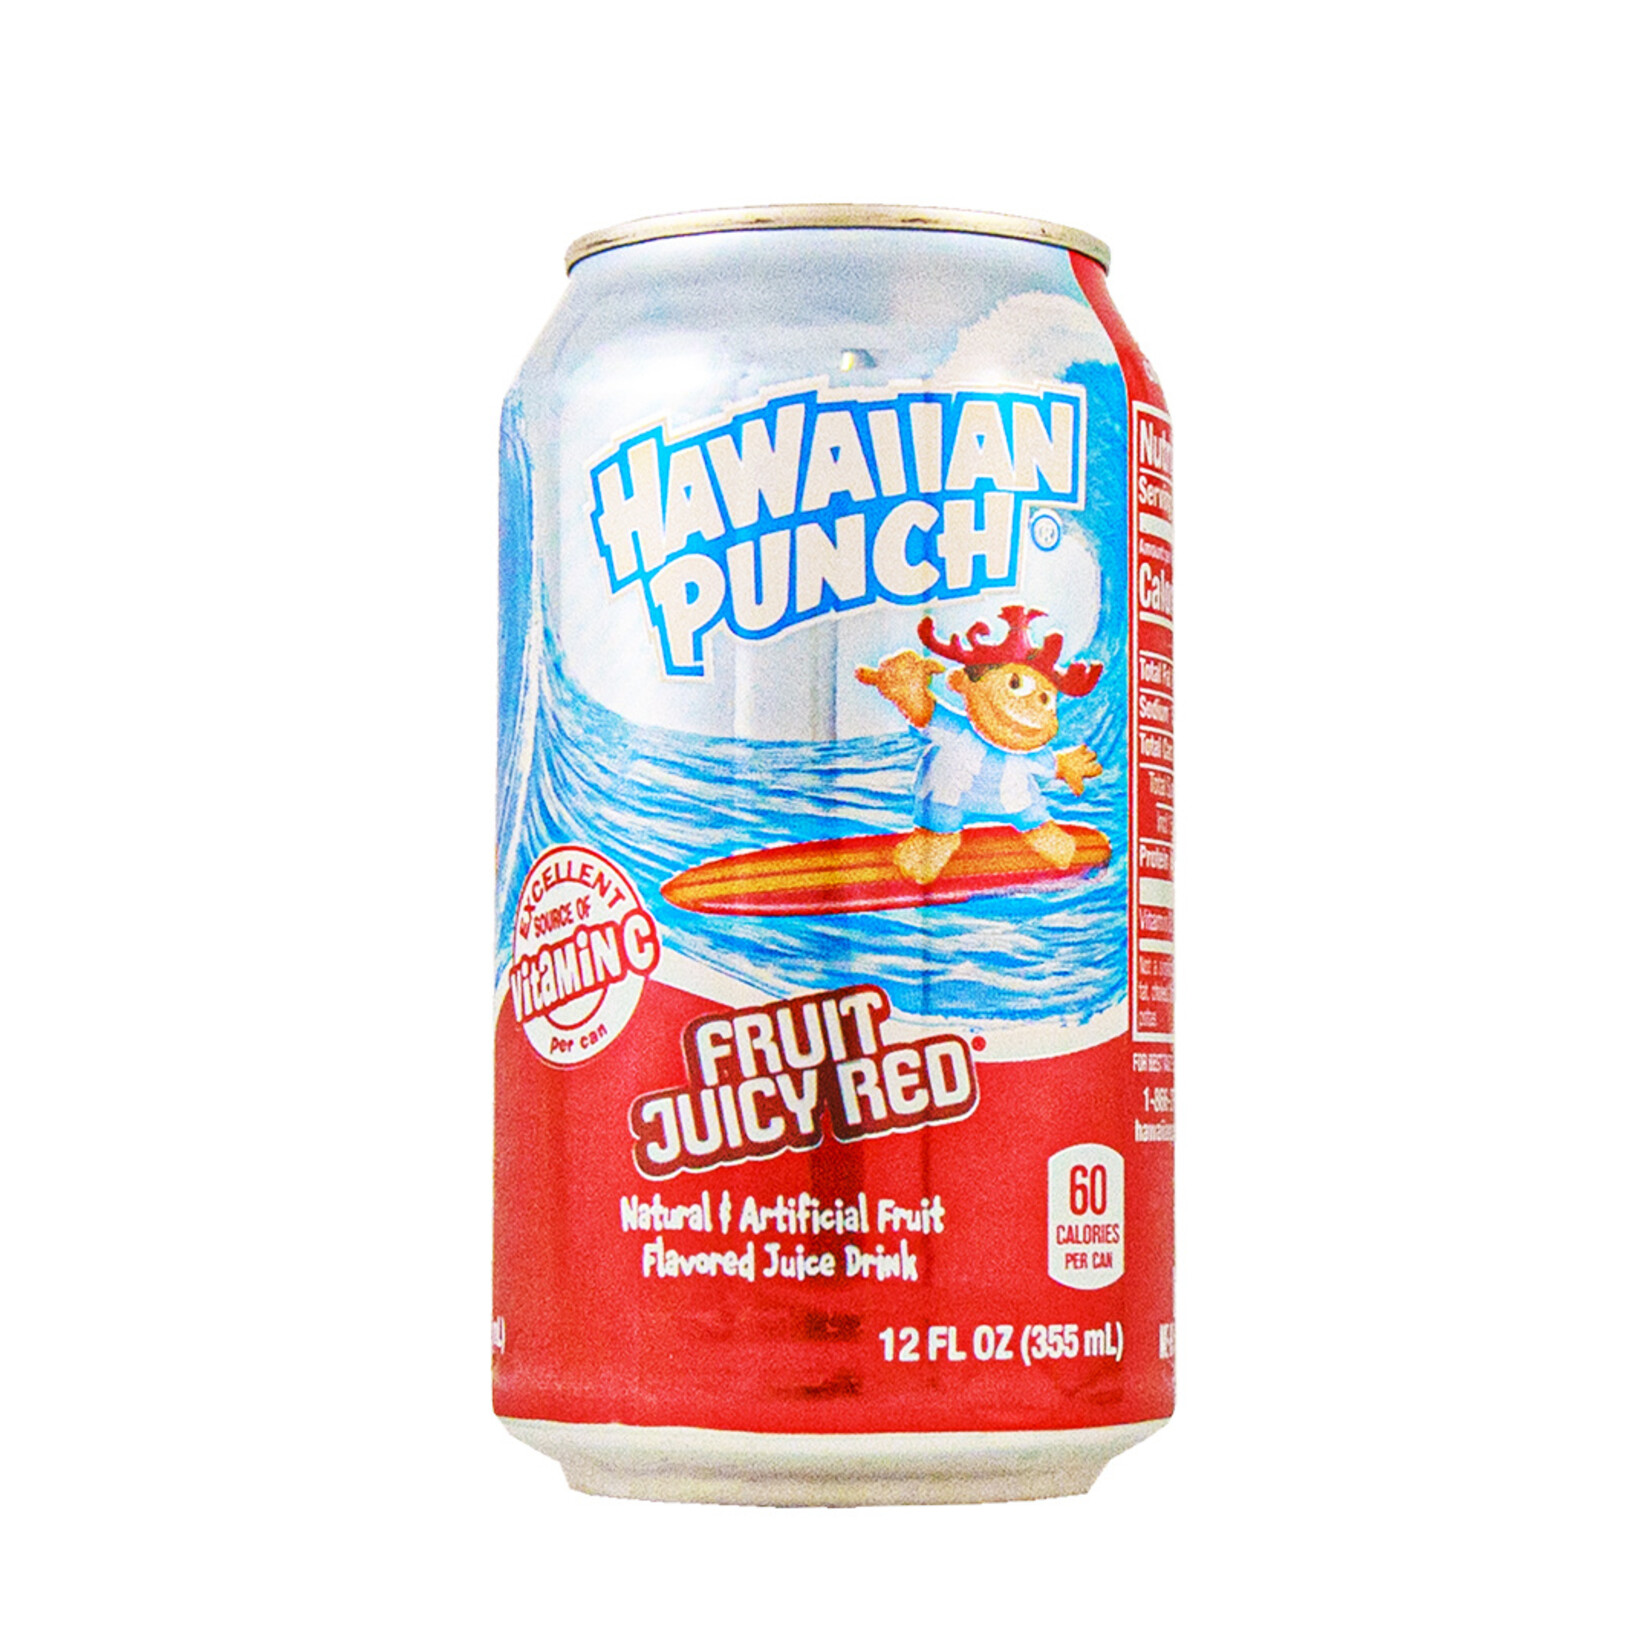 Jus Hawaiian punch 355ml